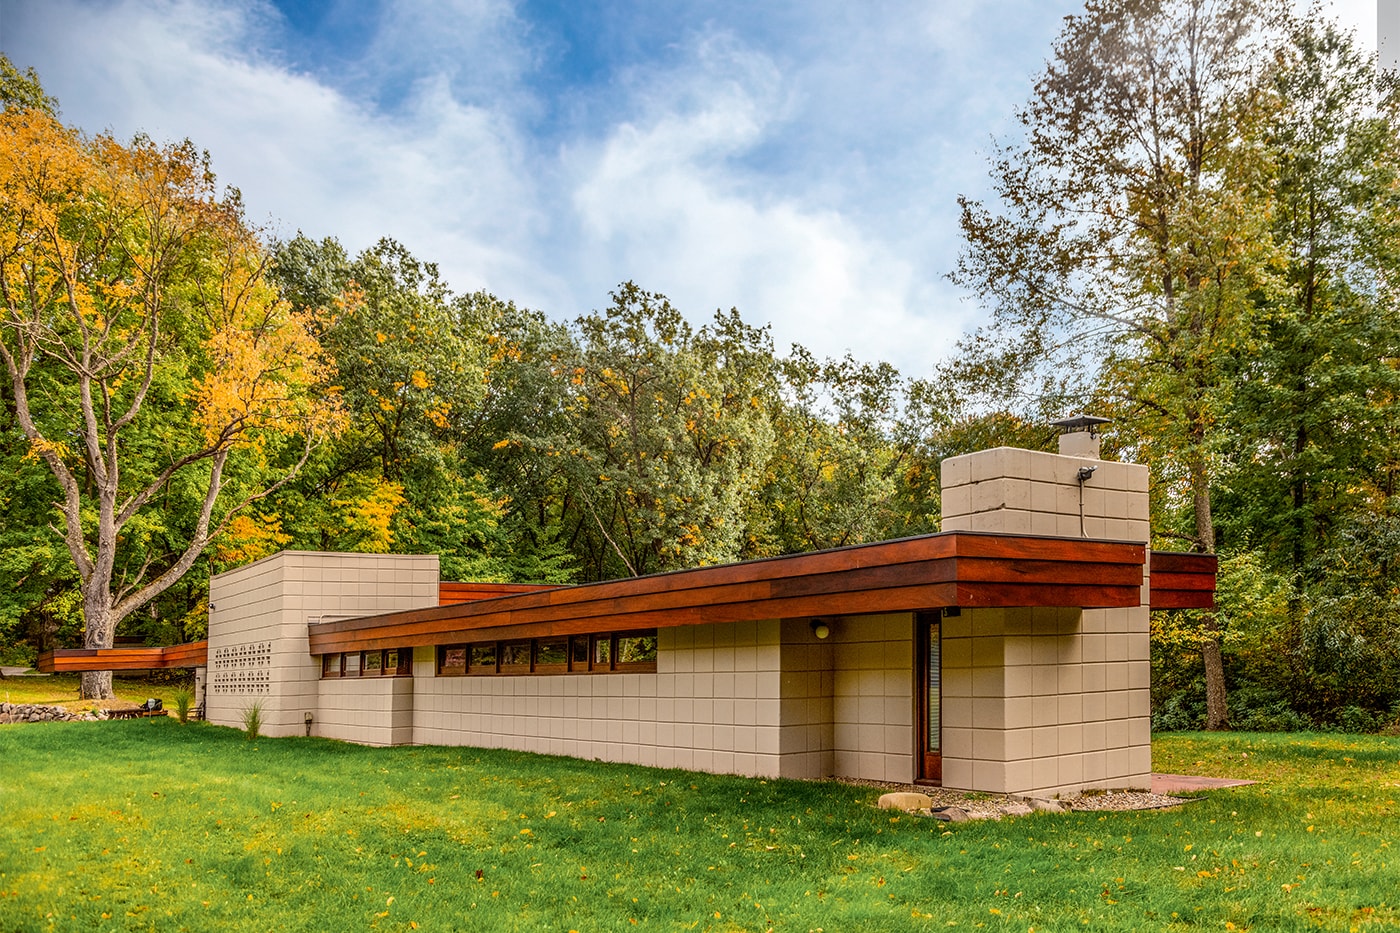 巨匠 フランクロイドライト設計による隣接した2つの邸宅が併せて約7億円で売り出し中 Listings: You Can Now Purchase a Pair of Neighboring Frank Lloyd Wright Houses 